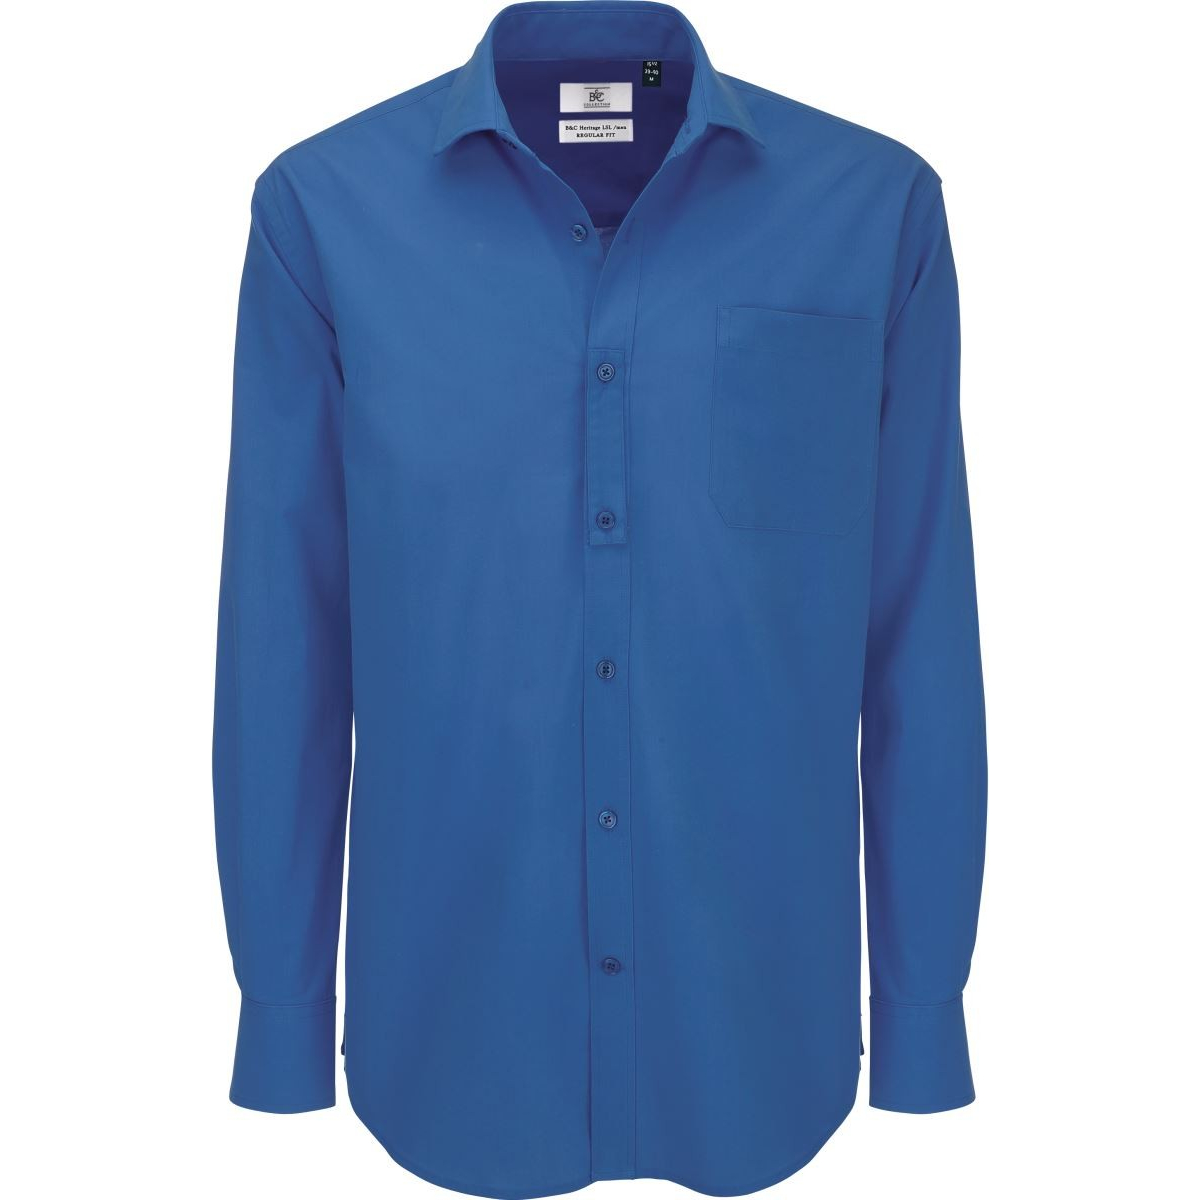 Pánská popelínová košile B&C Heritage s dlouhým rukávem - modrá, M